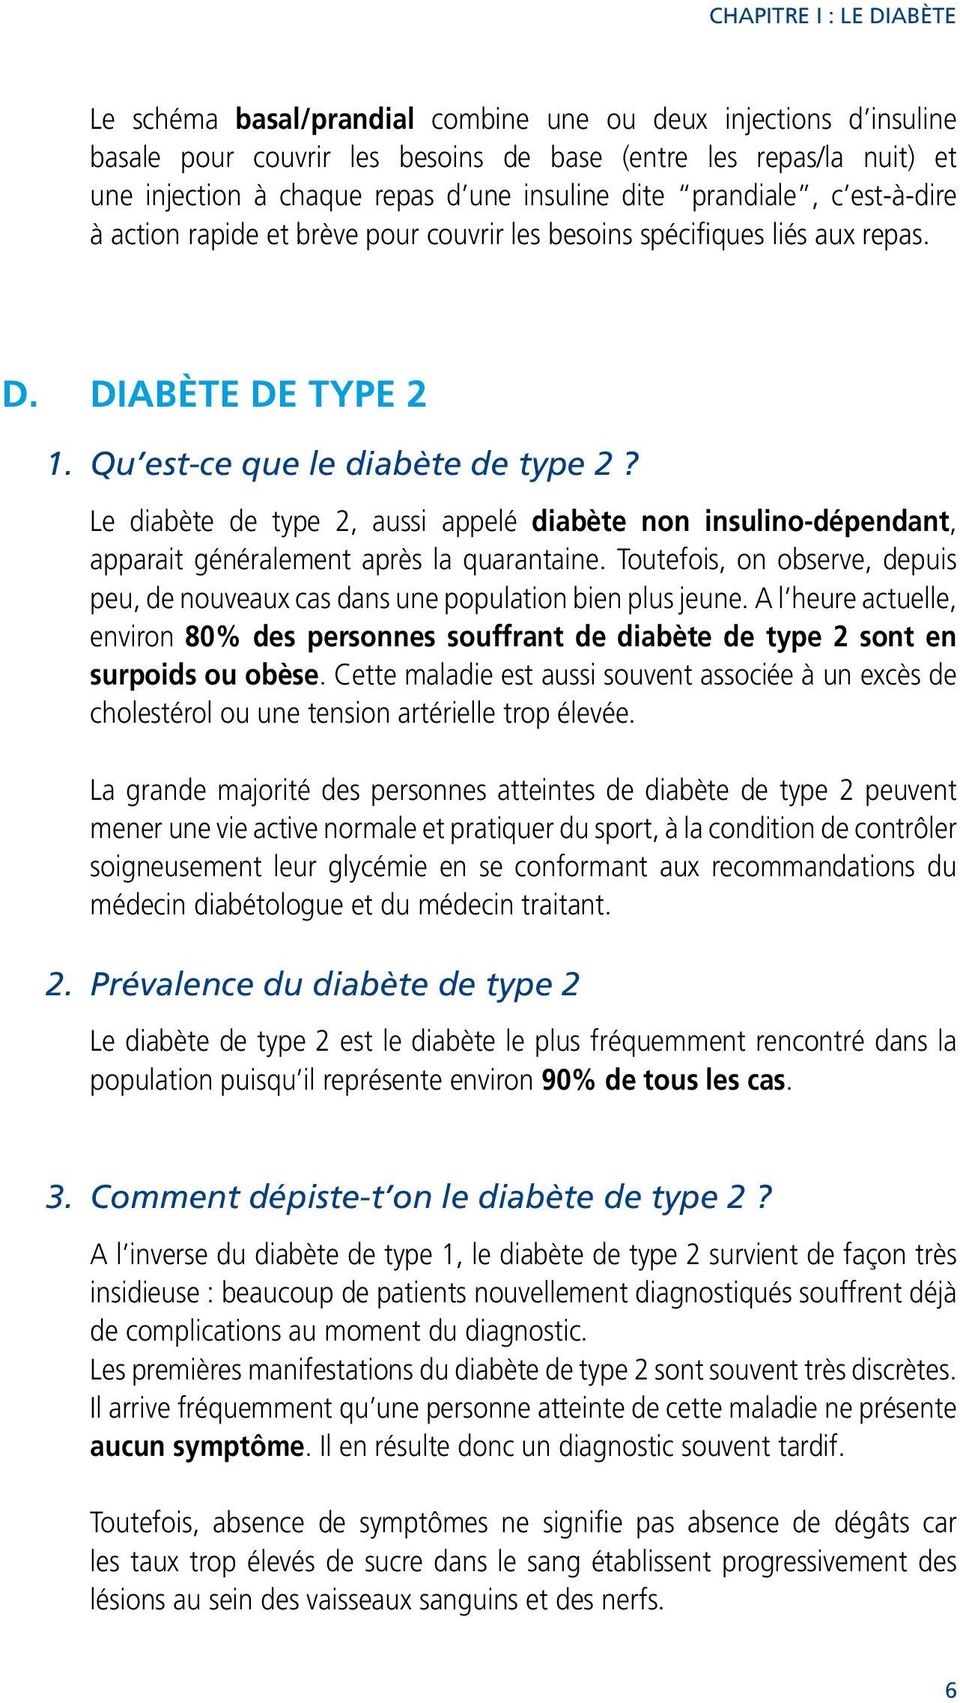 Le diabète de type 2, aussi appelé diabète non insulino-dépendant, apparait généralement après la quarantaine. Toutefois, on observe, depuis peu, de nouveaux cas dans une population bien plus jeune.